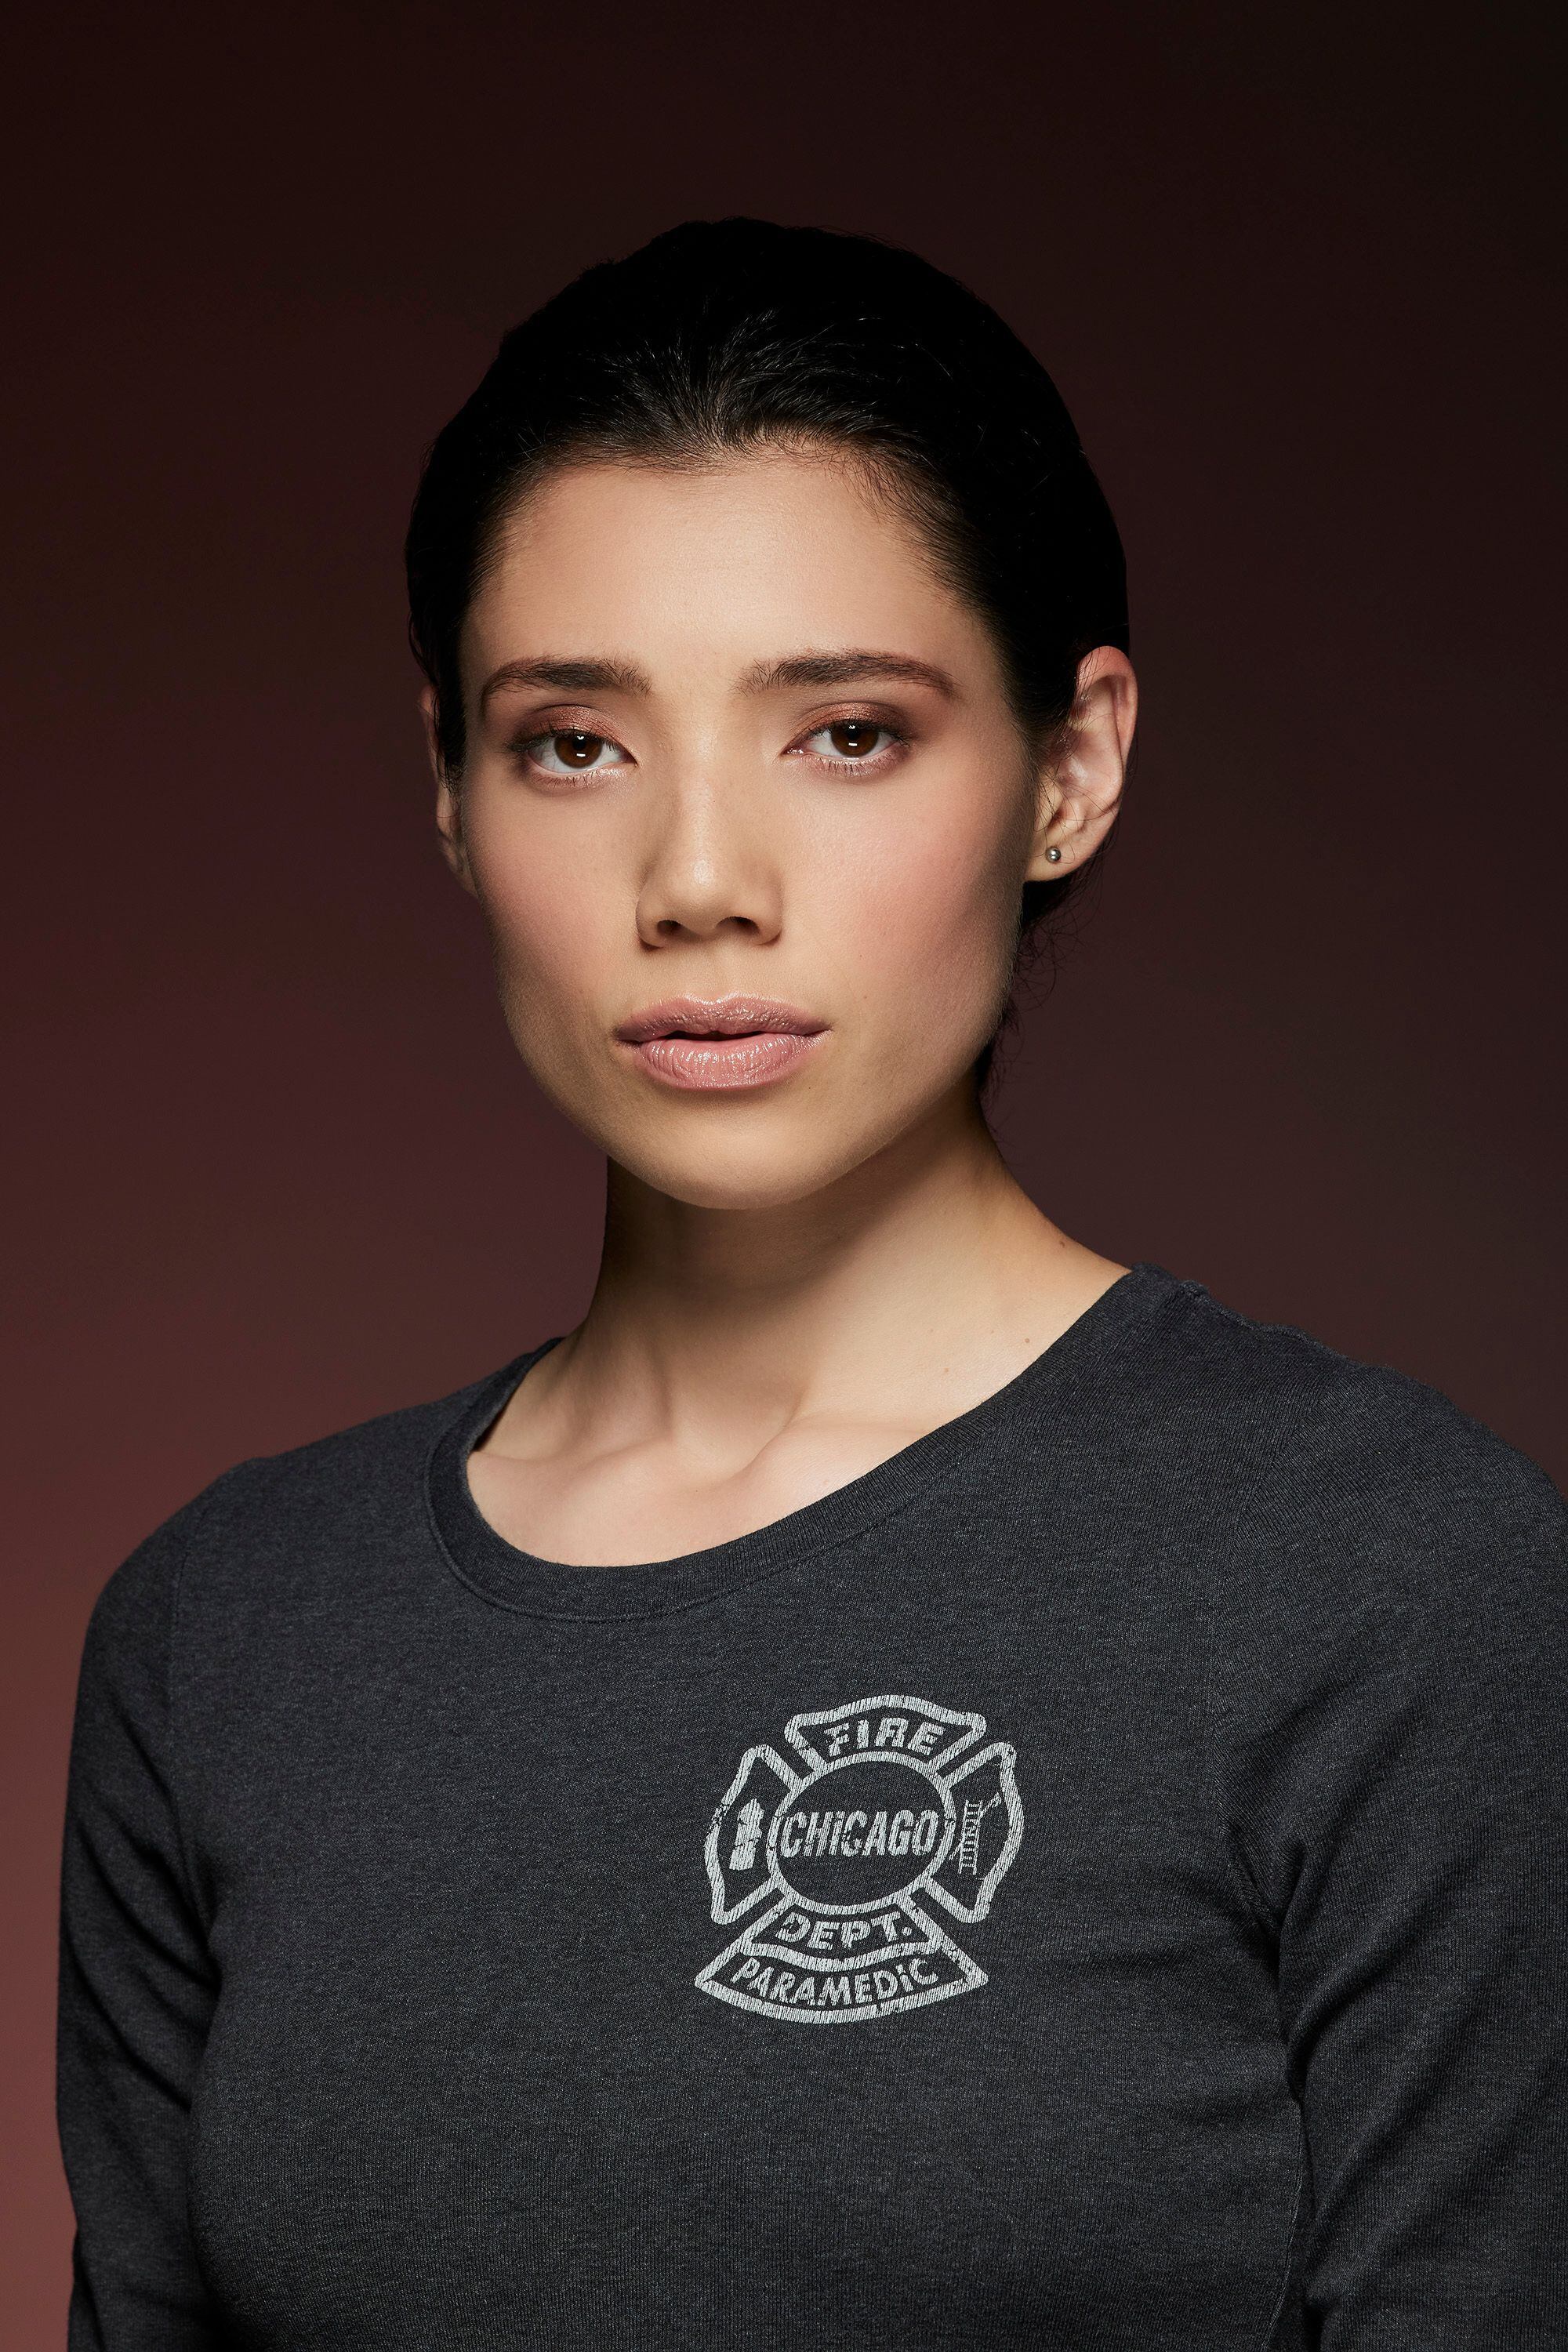 Chicago Fire cuenta con 11 temporadas y Violet aparece desde la temporada 8. Foto: Cortesía Universal Channel